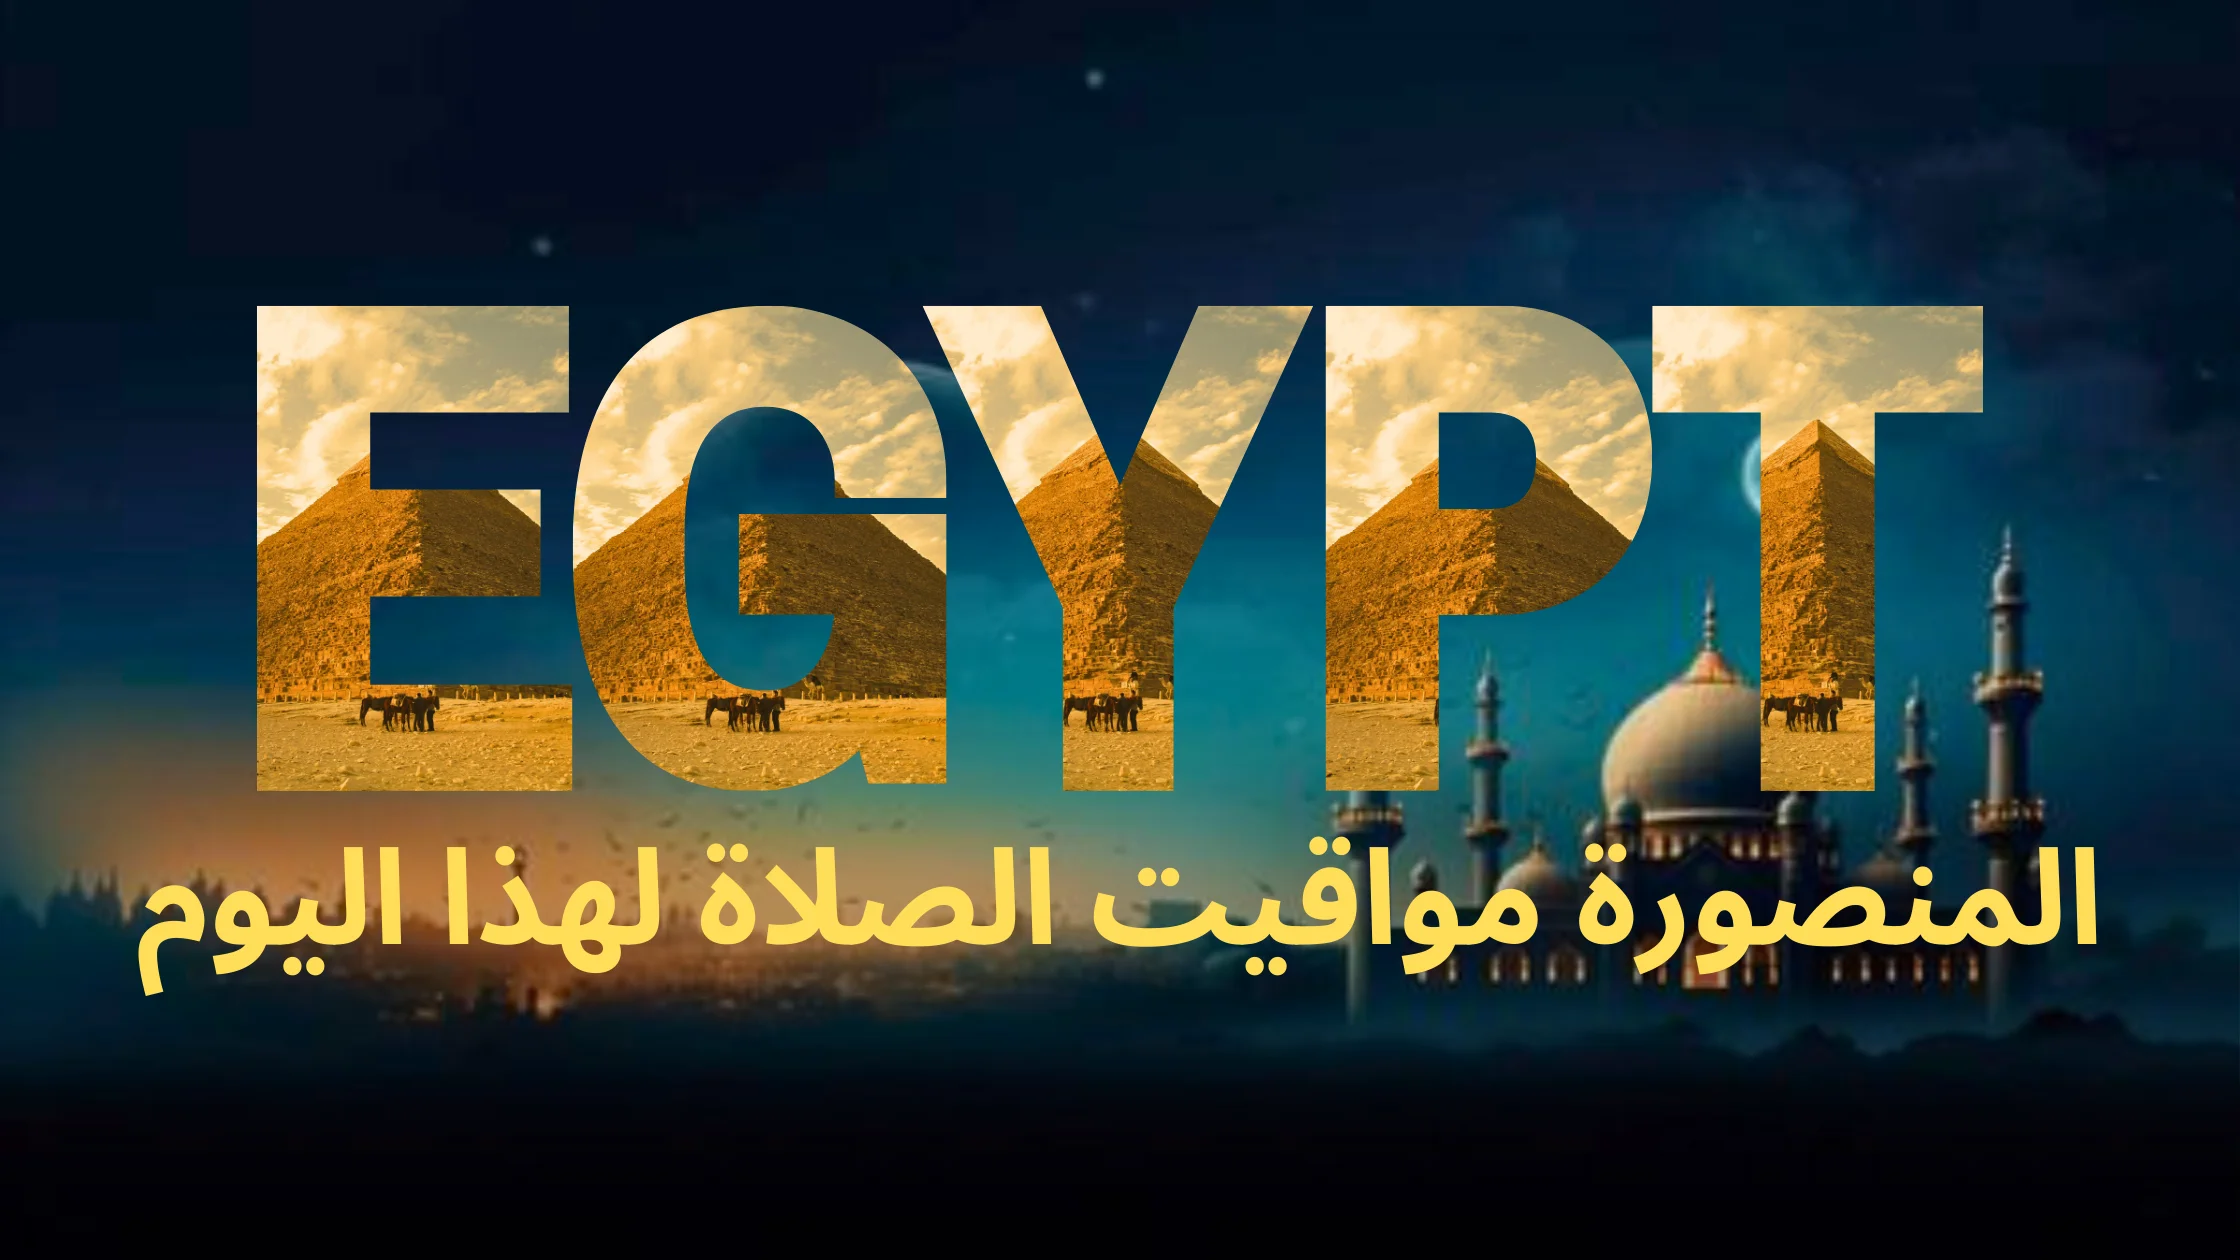 نص مكتوب بالخط العربي "مصر" متبوعًا بالنص العربي "المنصورة مواقيت الصلاة لهذا اليوم"